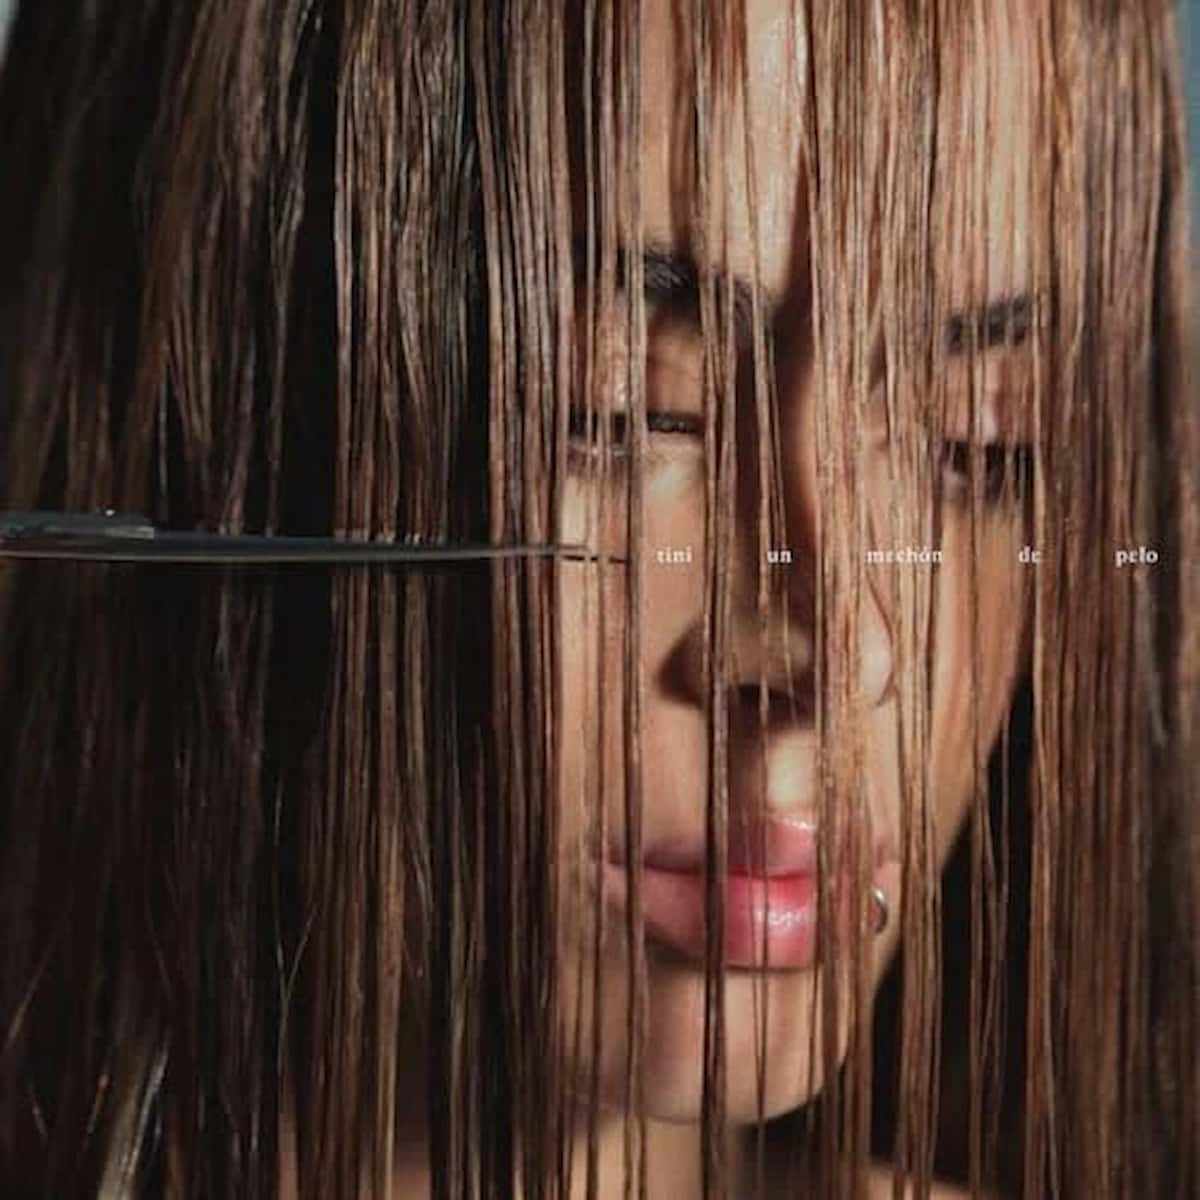 TINI 2024 - hier im Bild Tini (Martina Stoessel) auf dem Cover ihres neuen Albums “un mechón de pelo”